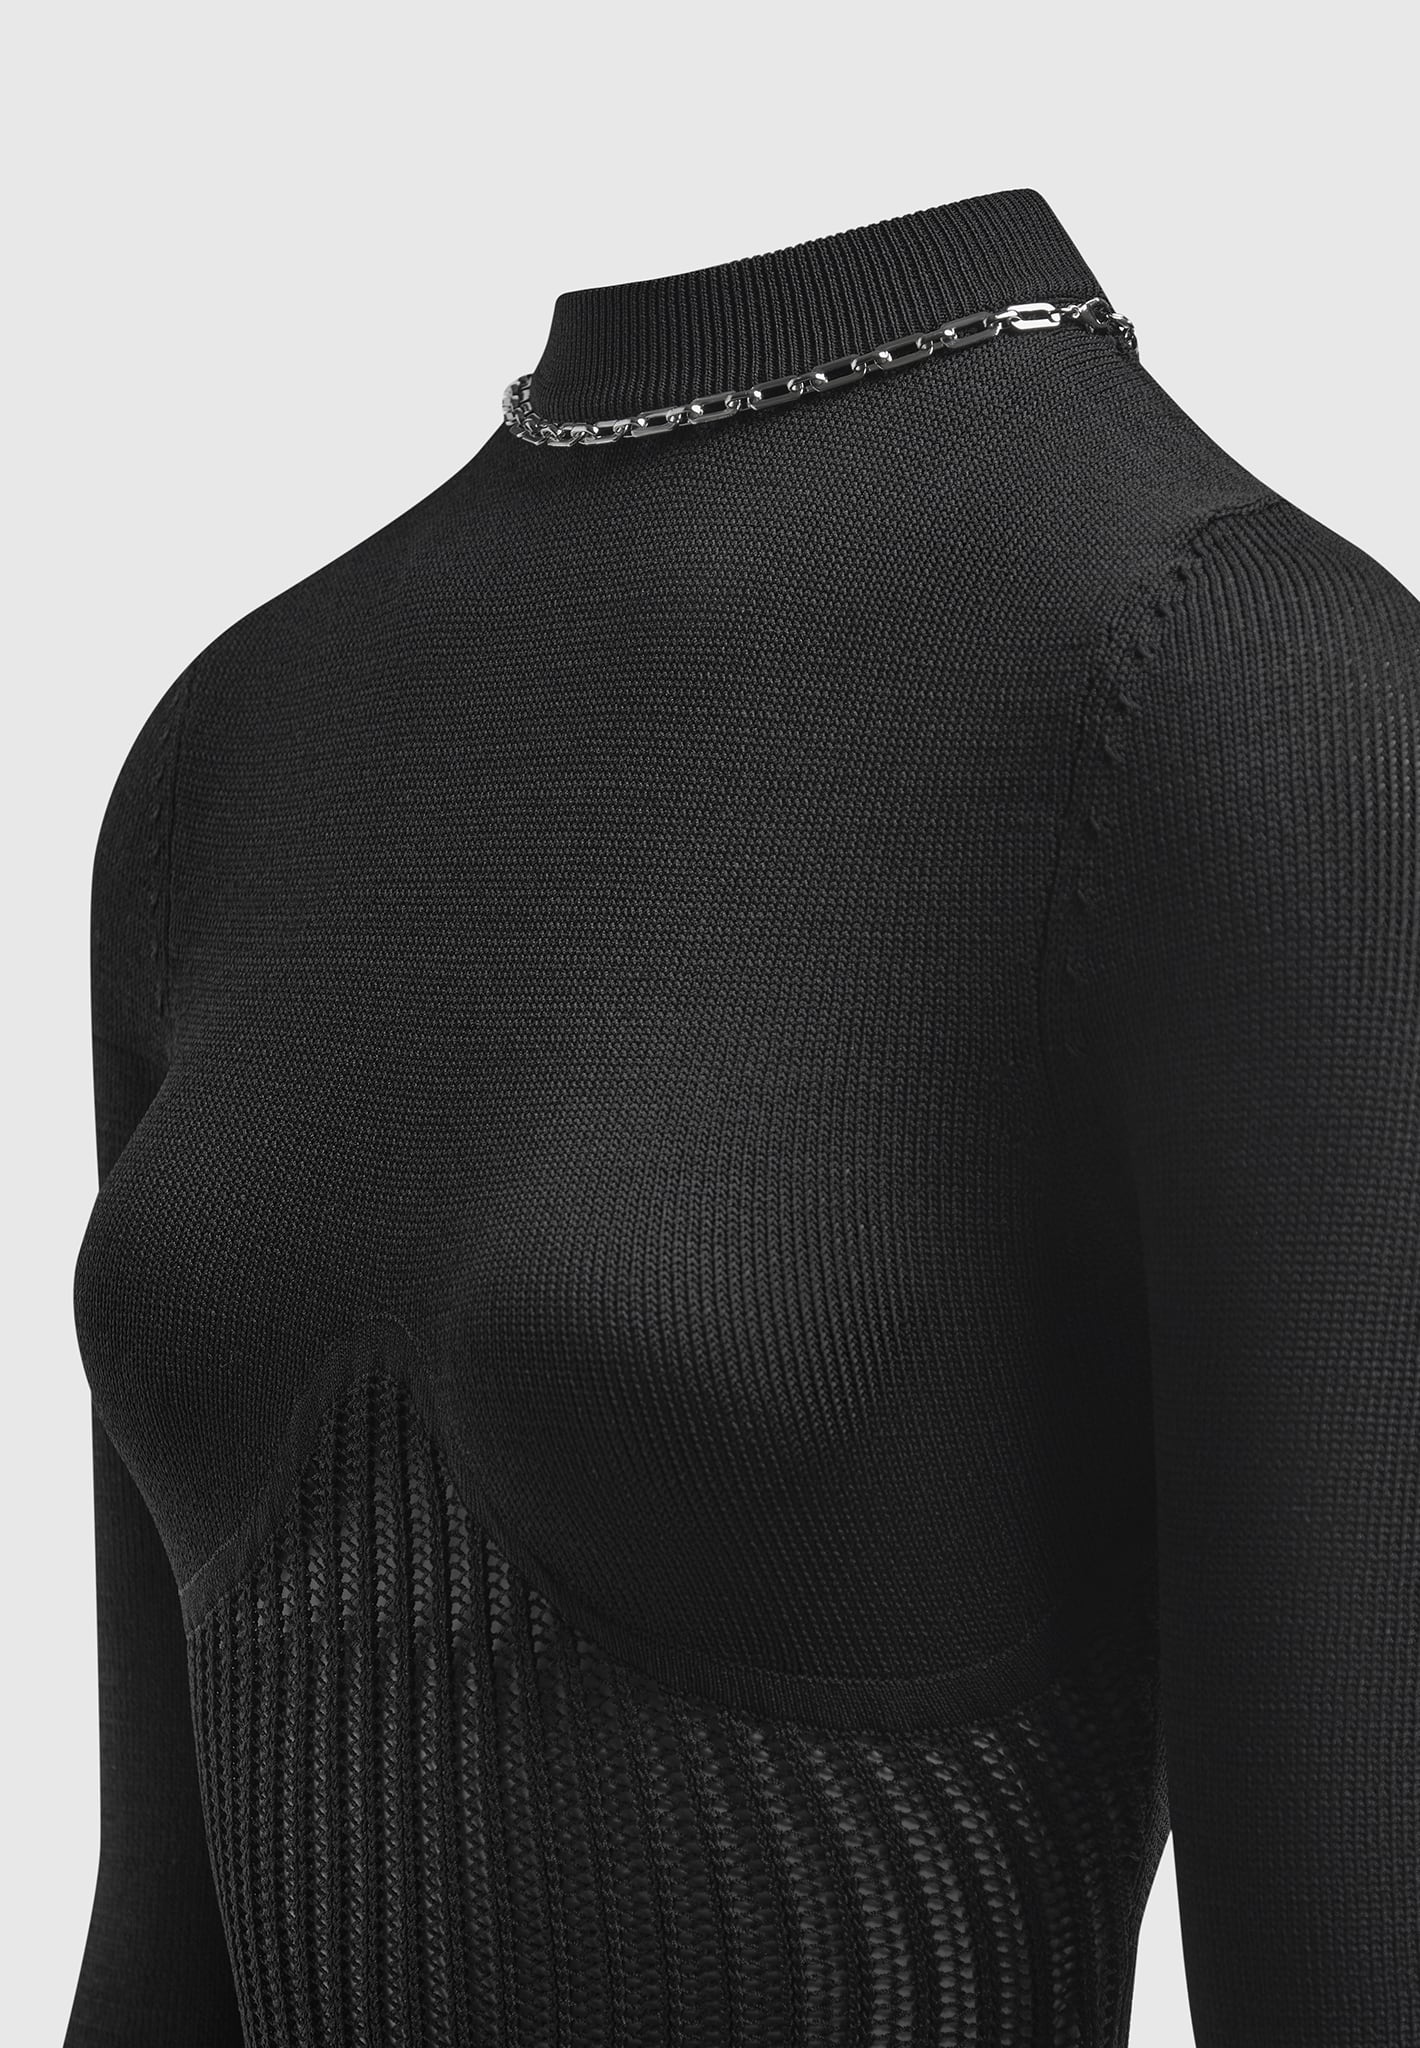 contour-knit-bodysuit-with-chain-black